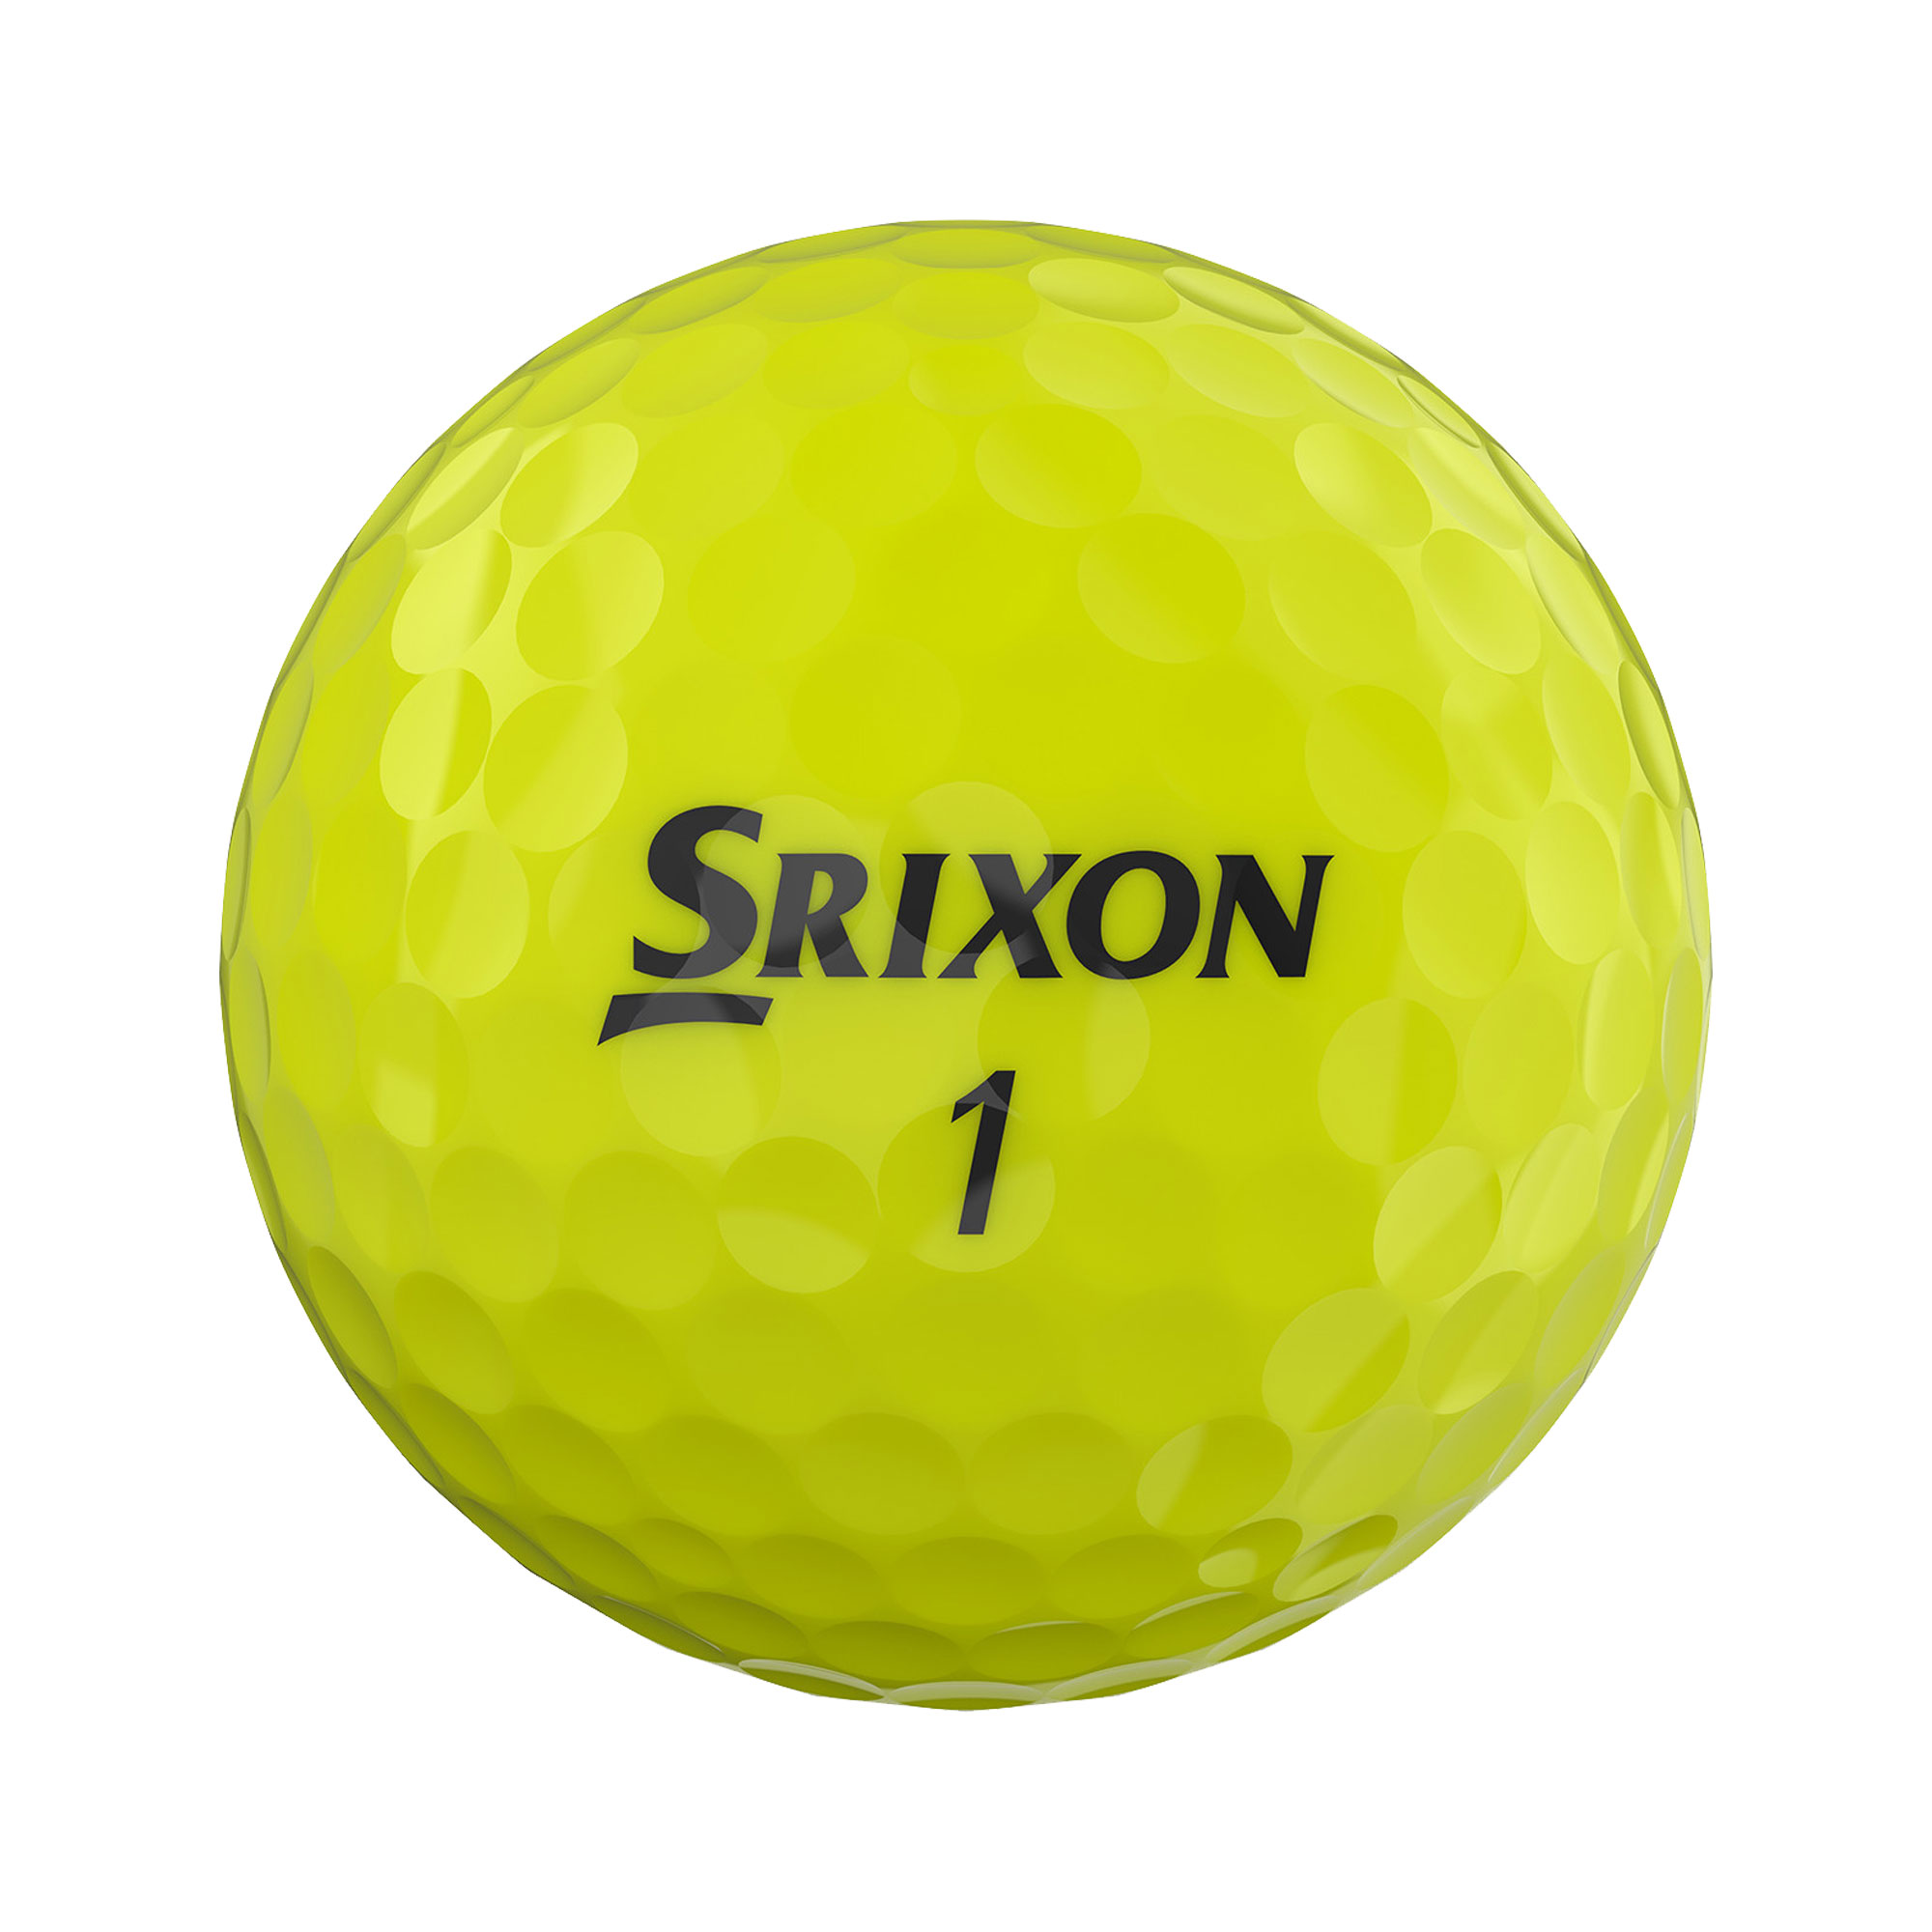 Srixon AD333 Golfbälle bedruckt, gelb (VPE à 12 Bälle)